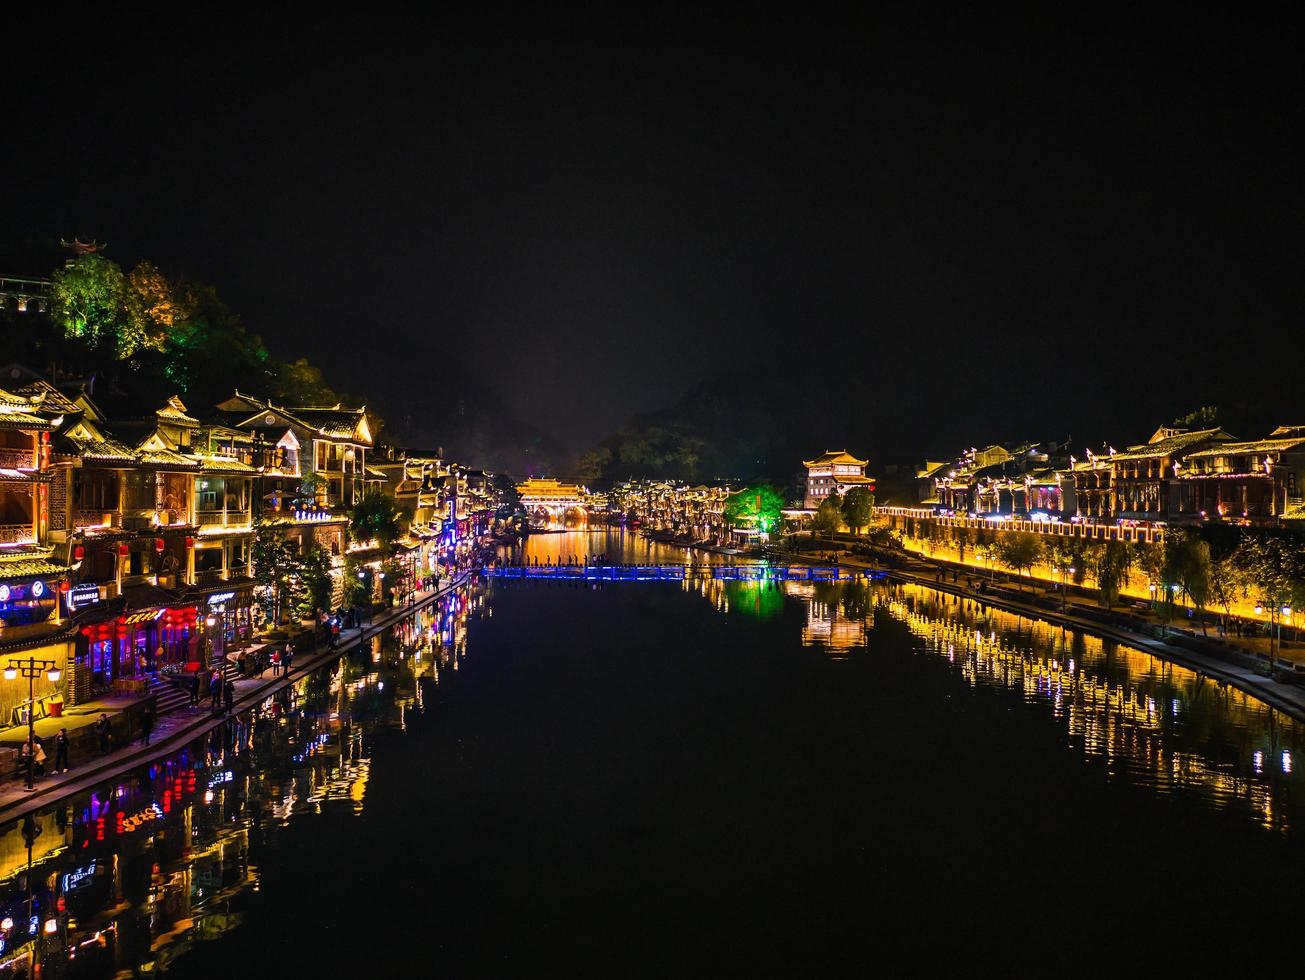 vue panoramique dans la nuit de la vieille ville de fenghuang .phoenix ancienne ville ou comté de fenghuang est un comté de la province du hunan, chine photo